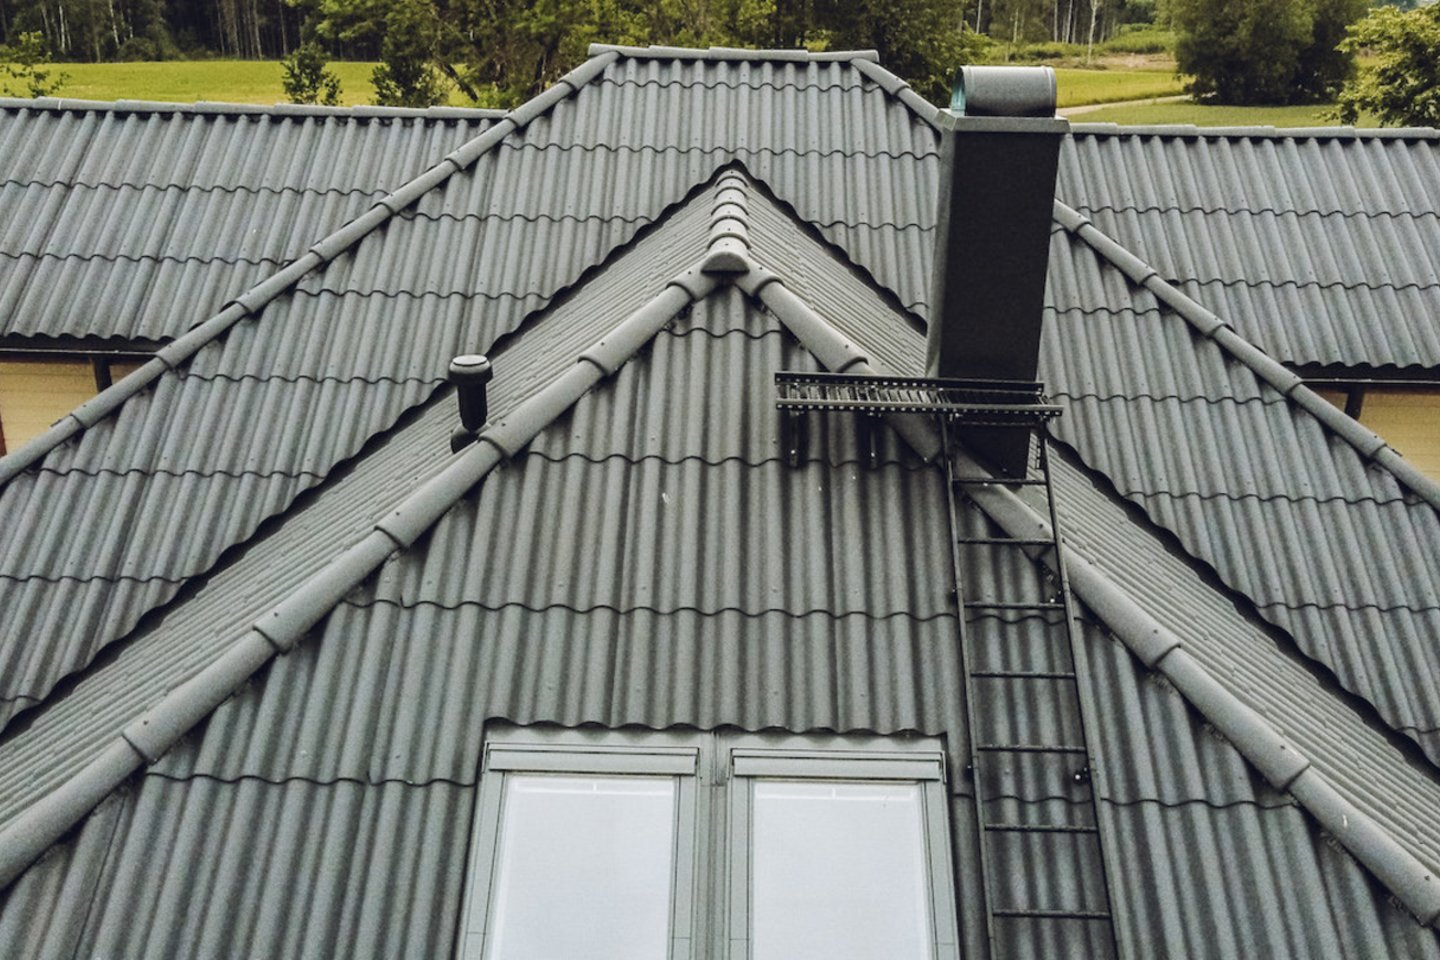 Ruošiantis dengti stogą, būtina įvertinti kiekvienos dangos pliusus ir minusus bei tinkamumą namui.